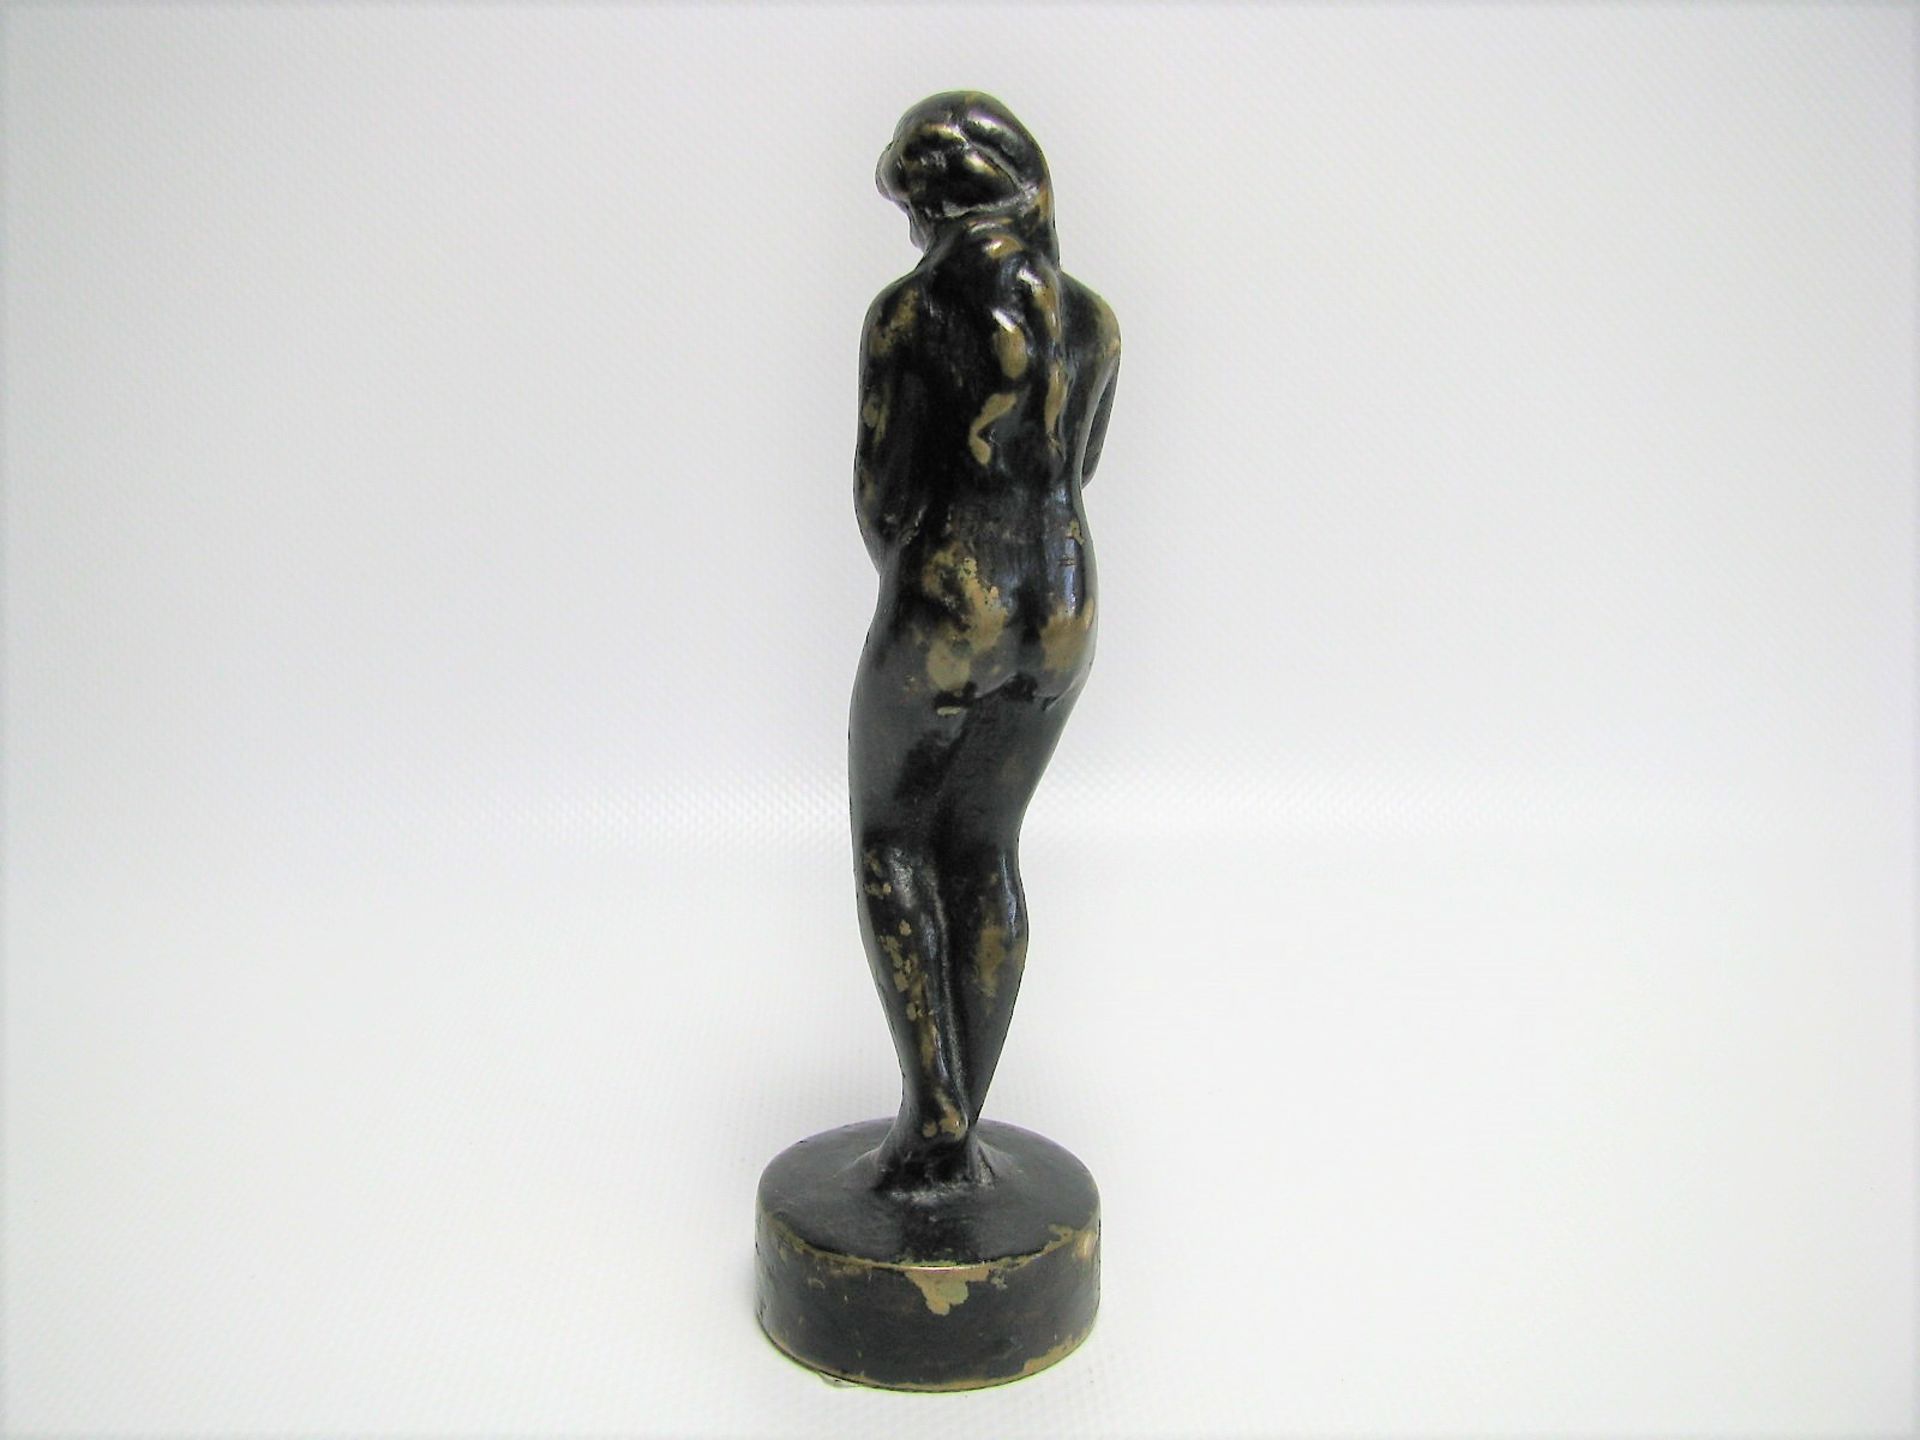 Unbekannt, Weiblicher Akt, Bronze, h 13,5 cm, d 4 cm. - Bild 2 aus 2